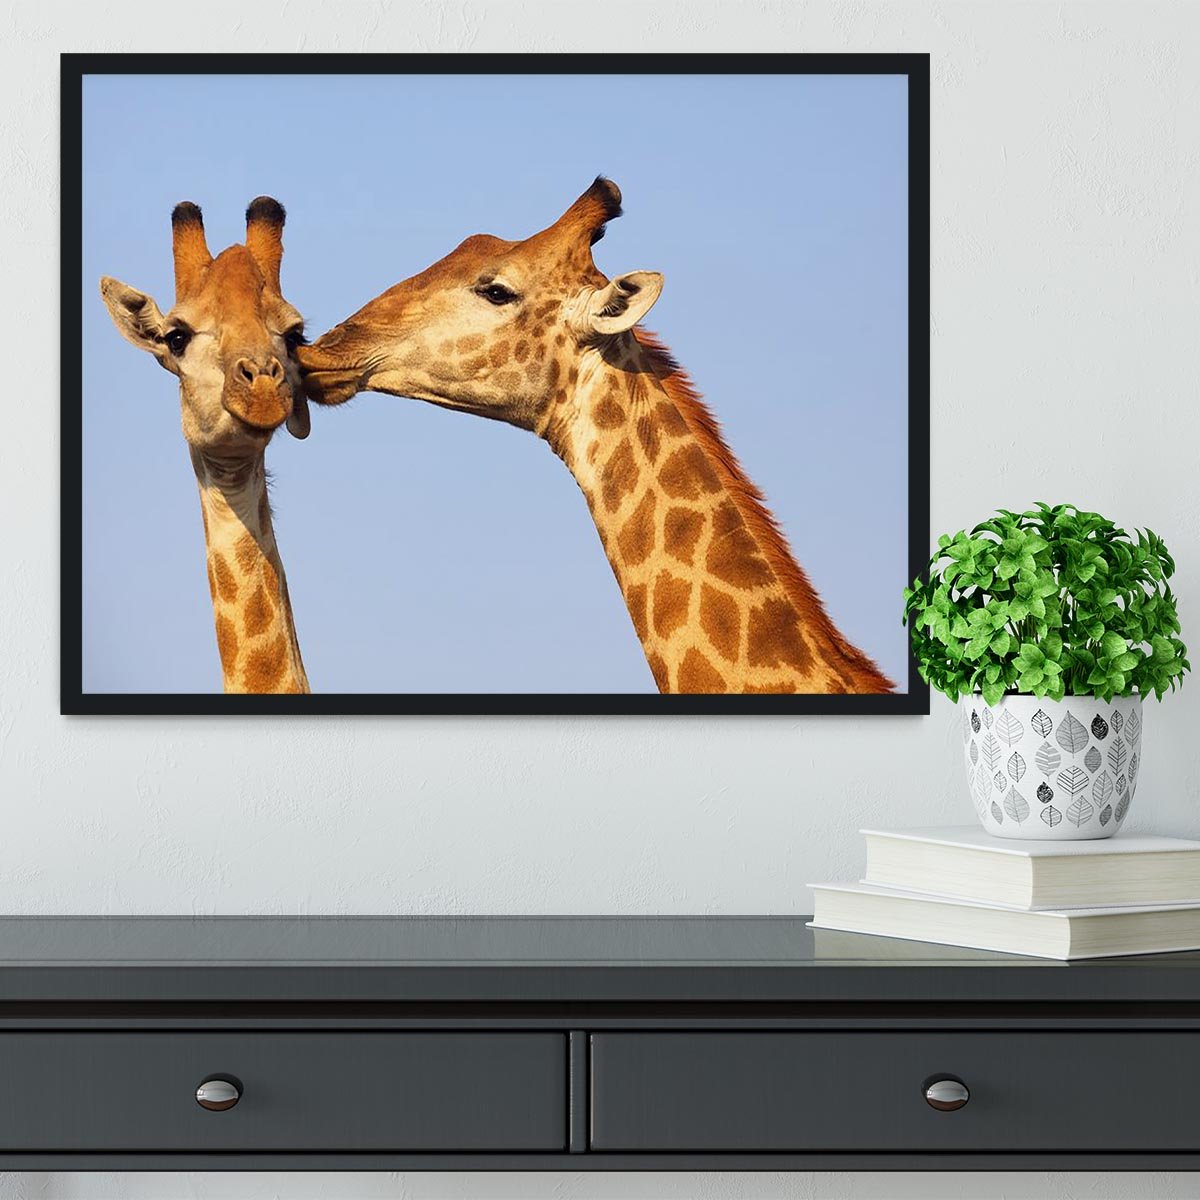 Giraffe pair bonding Framed Print - Canvas Art Rocks - 2